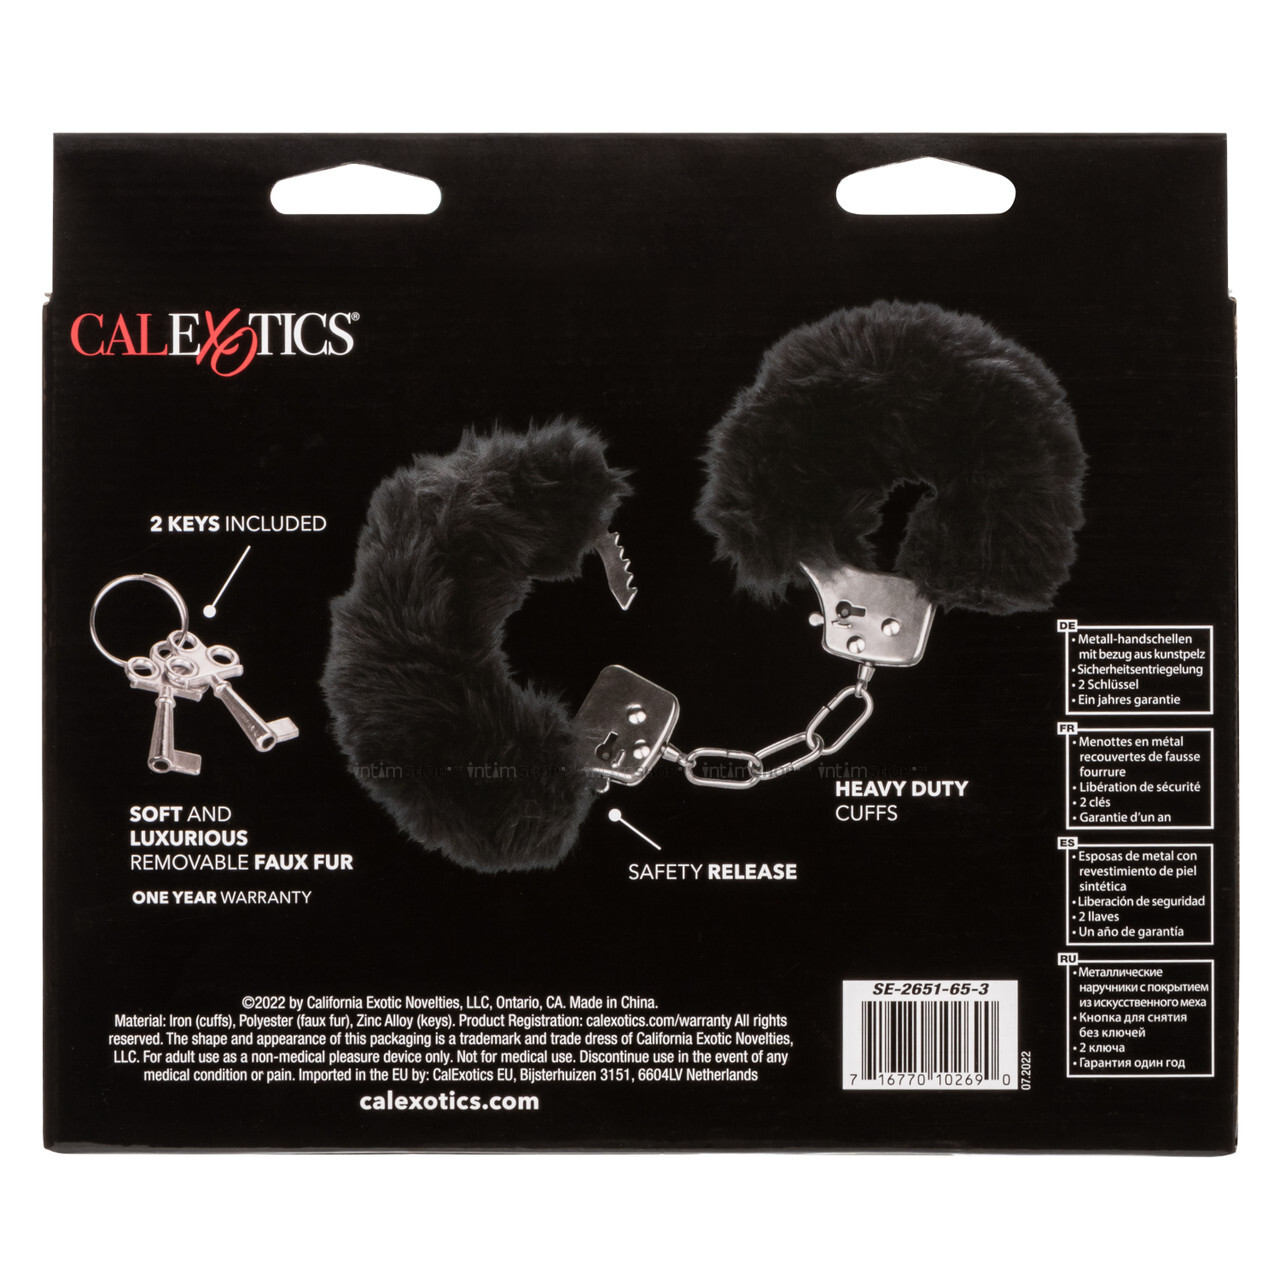 Наручники меховые CalExotics Ultra Fluffy Furry, черные